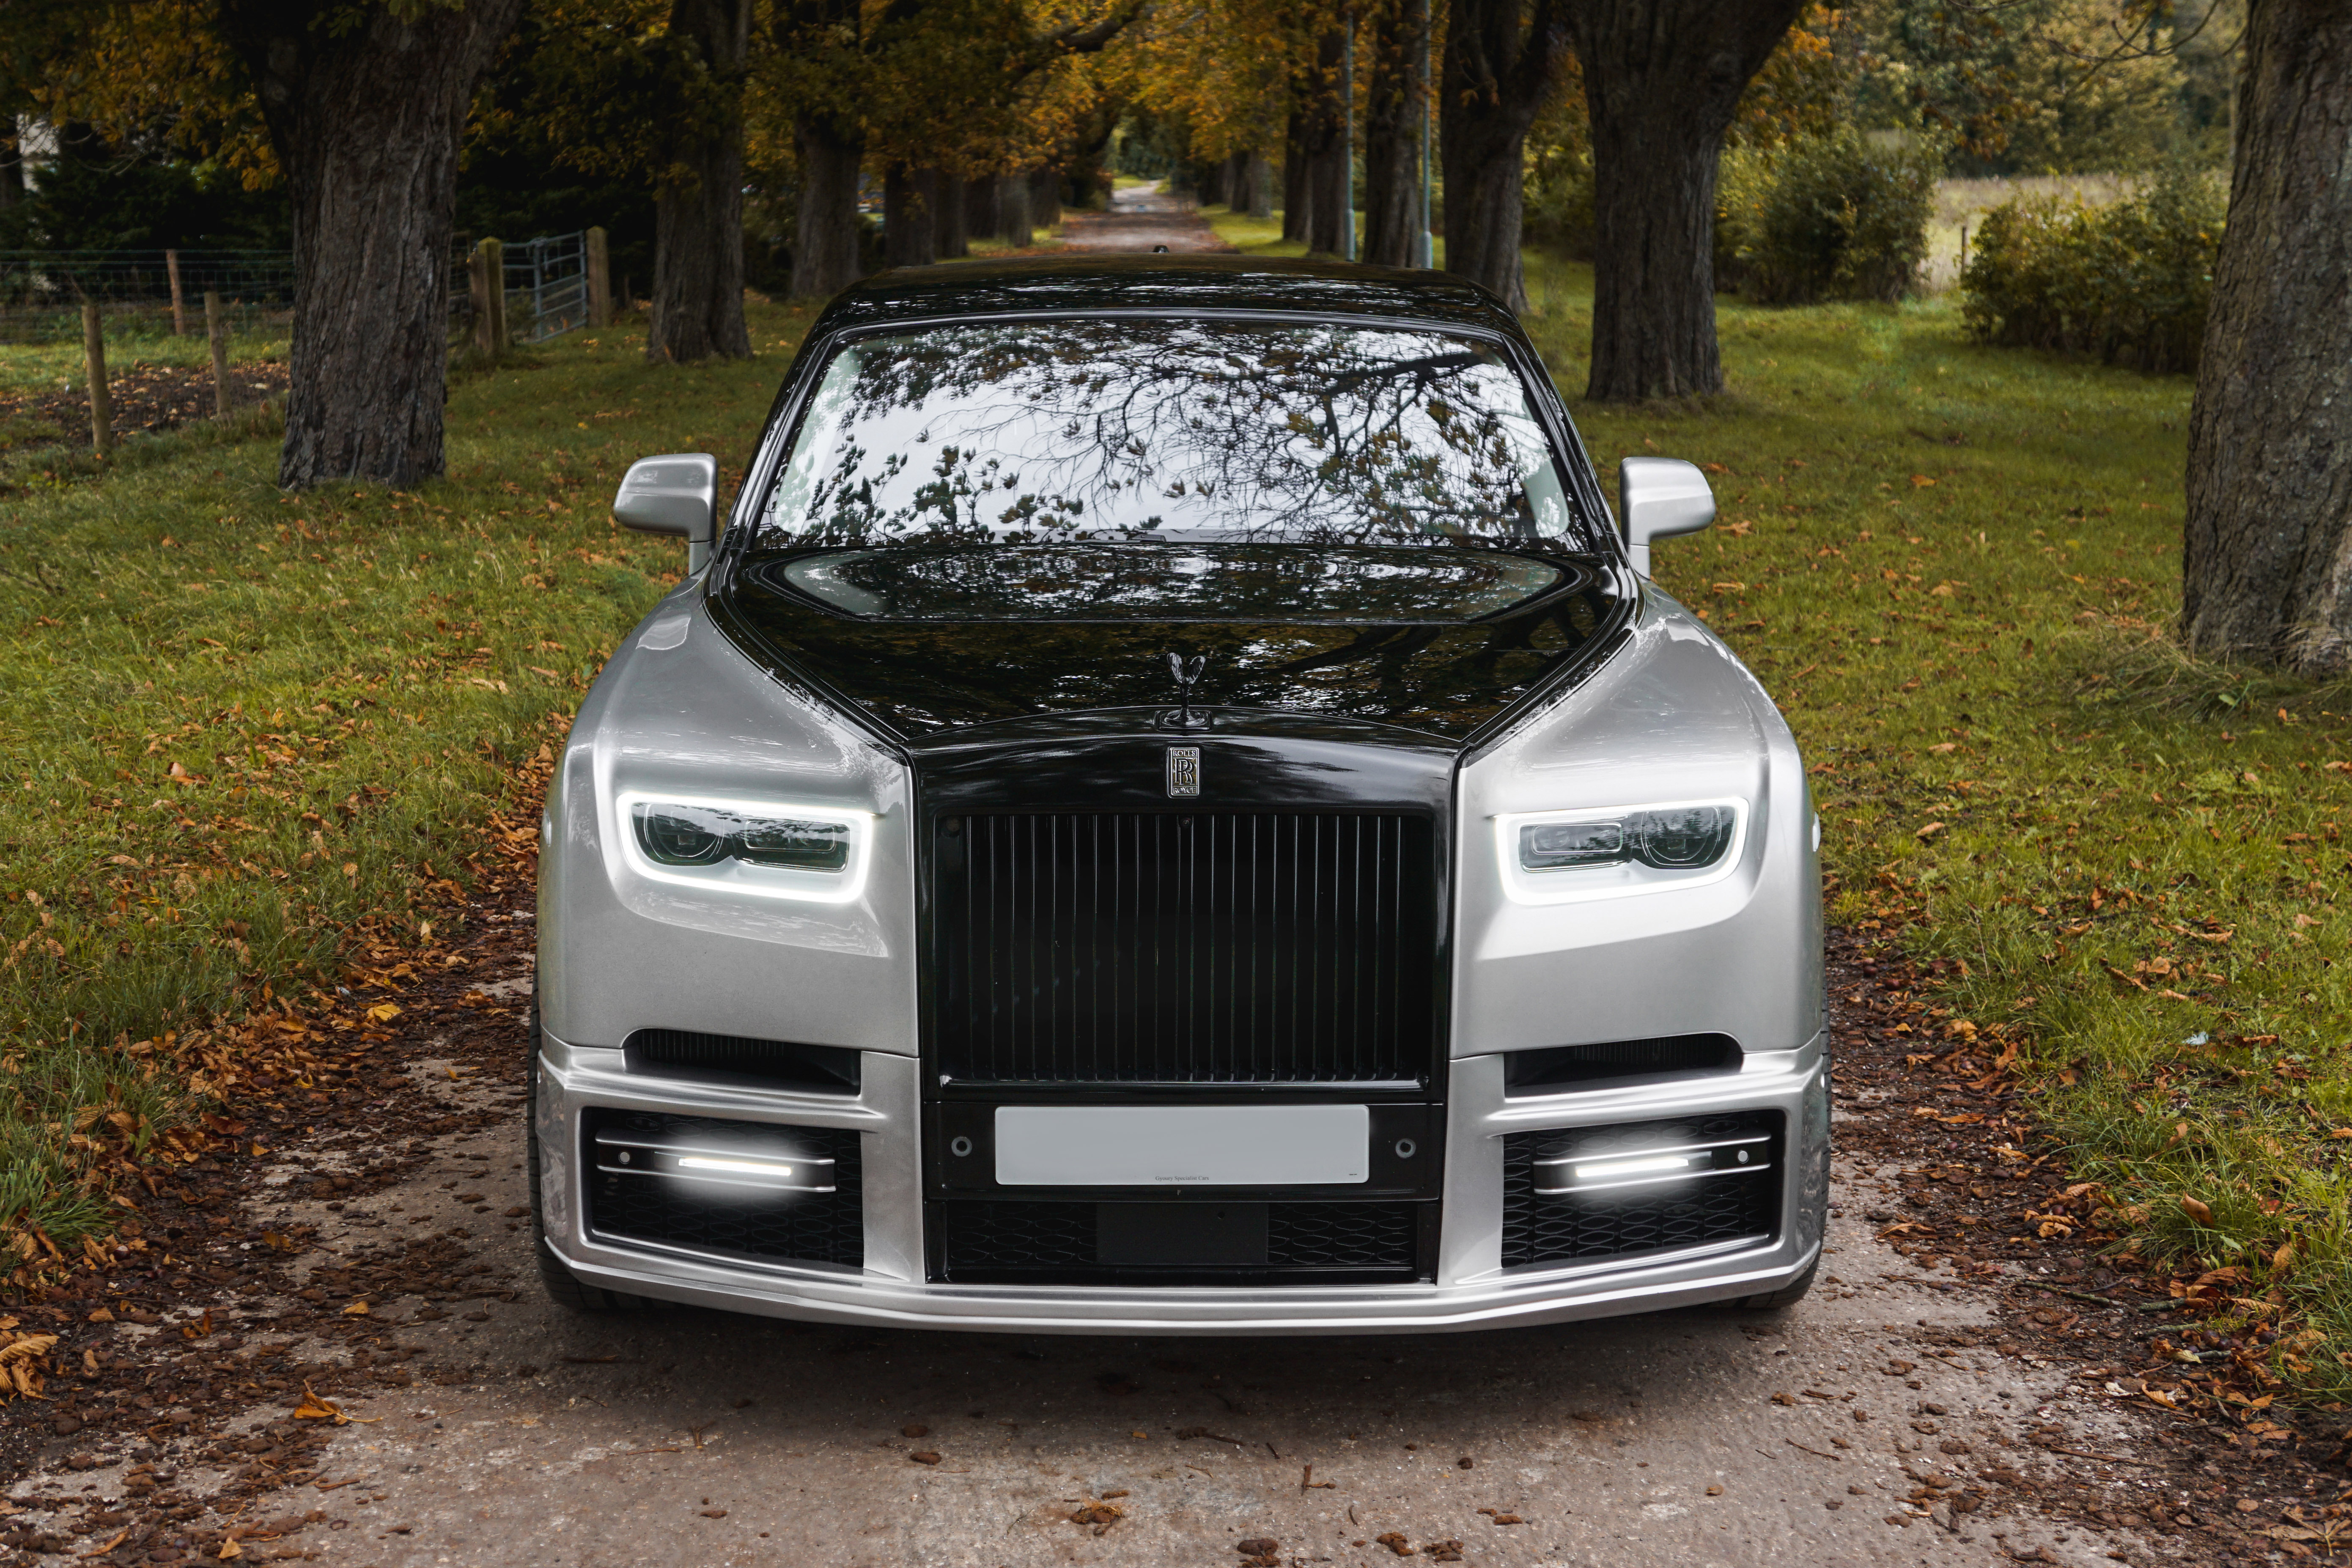 Rolls Royce Phantom - Revere London